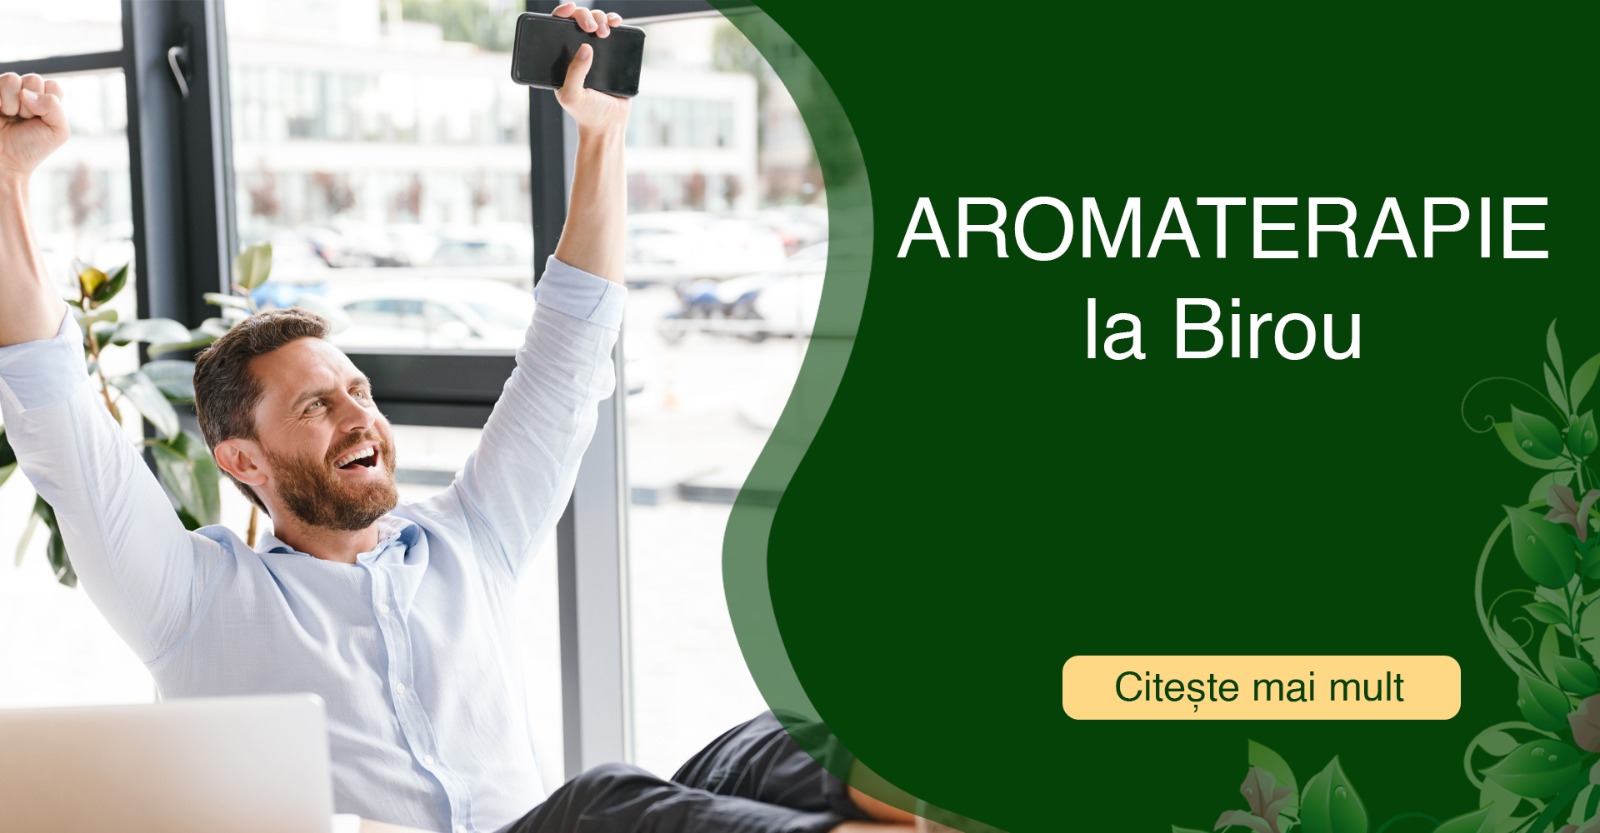 Utilizarea aromaterapiei la locul de munca | Beneficii | Recomandari